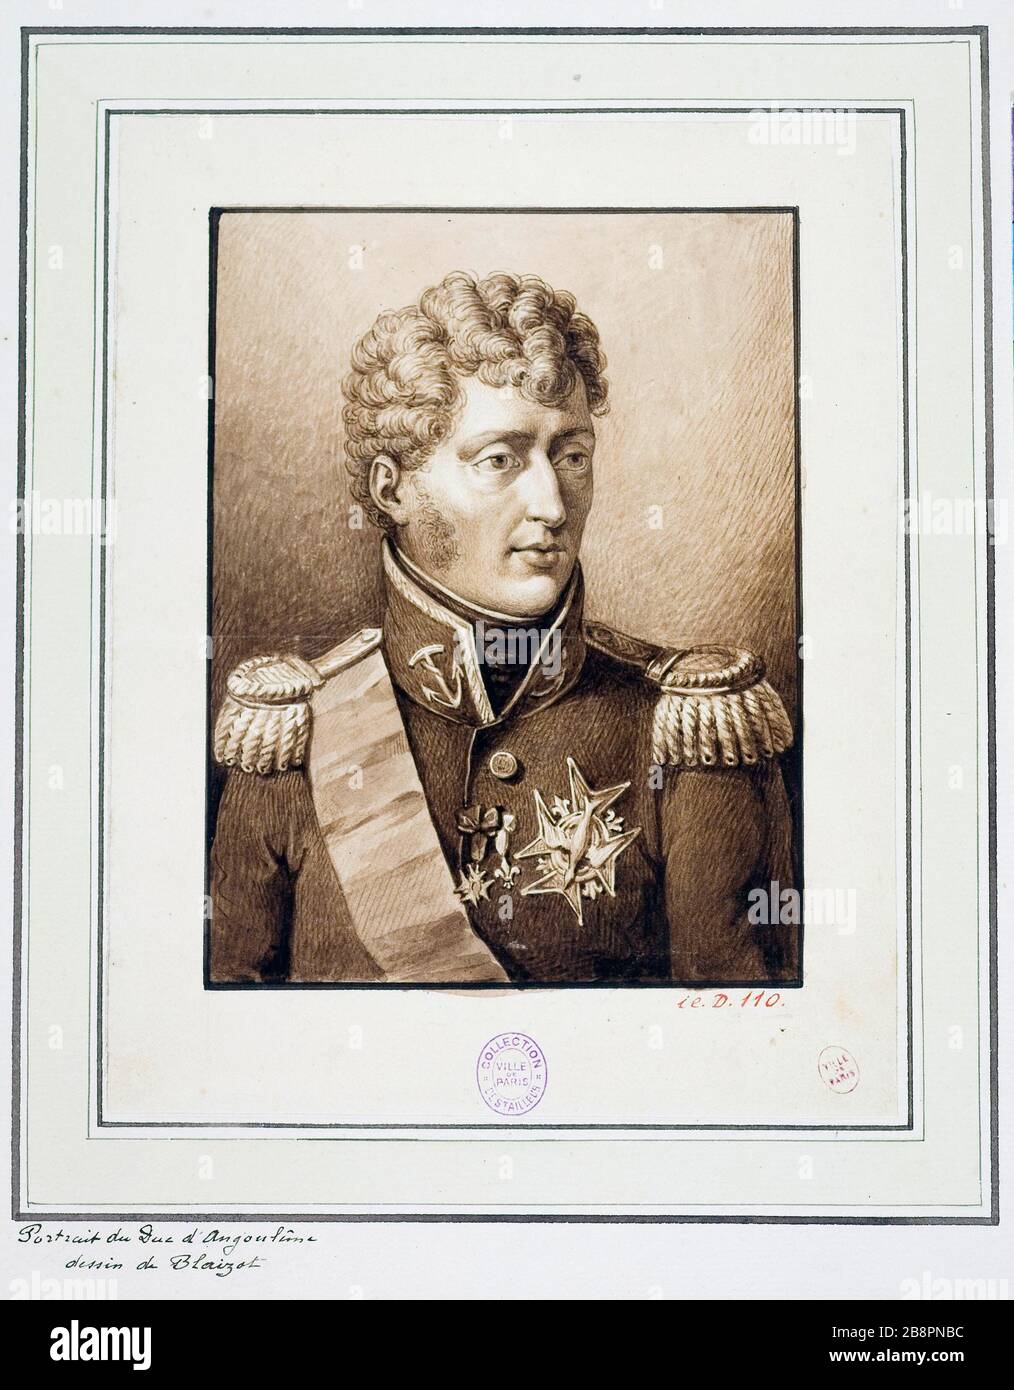 PORTRAIT OF THE DUKE OF ANGOULEME Eugène Blaisot (né en 1821). 'Portrait du duc d'Angoulême'. Lavis au trait. Paris, musée Carnavalet. Stock Photo